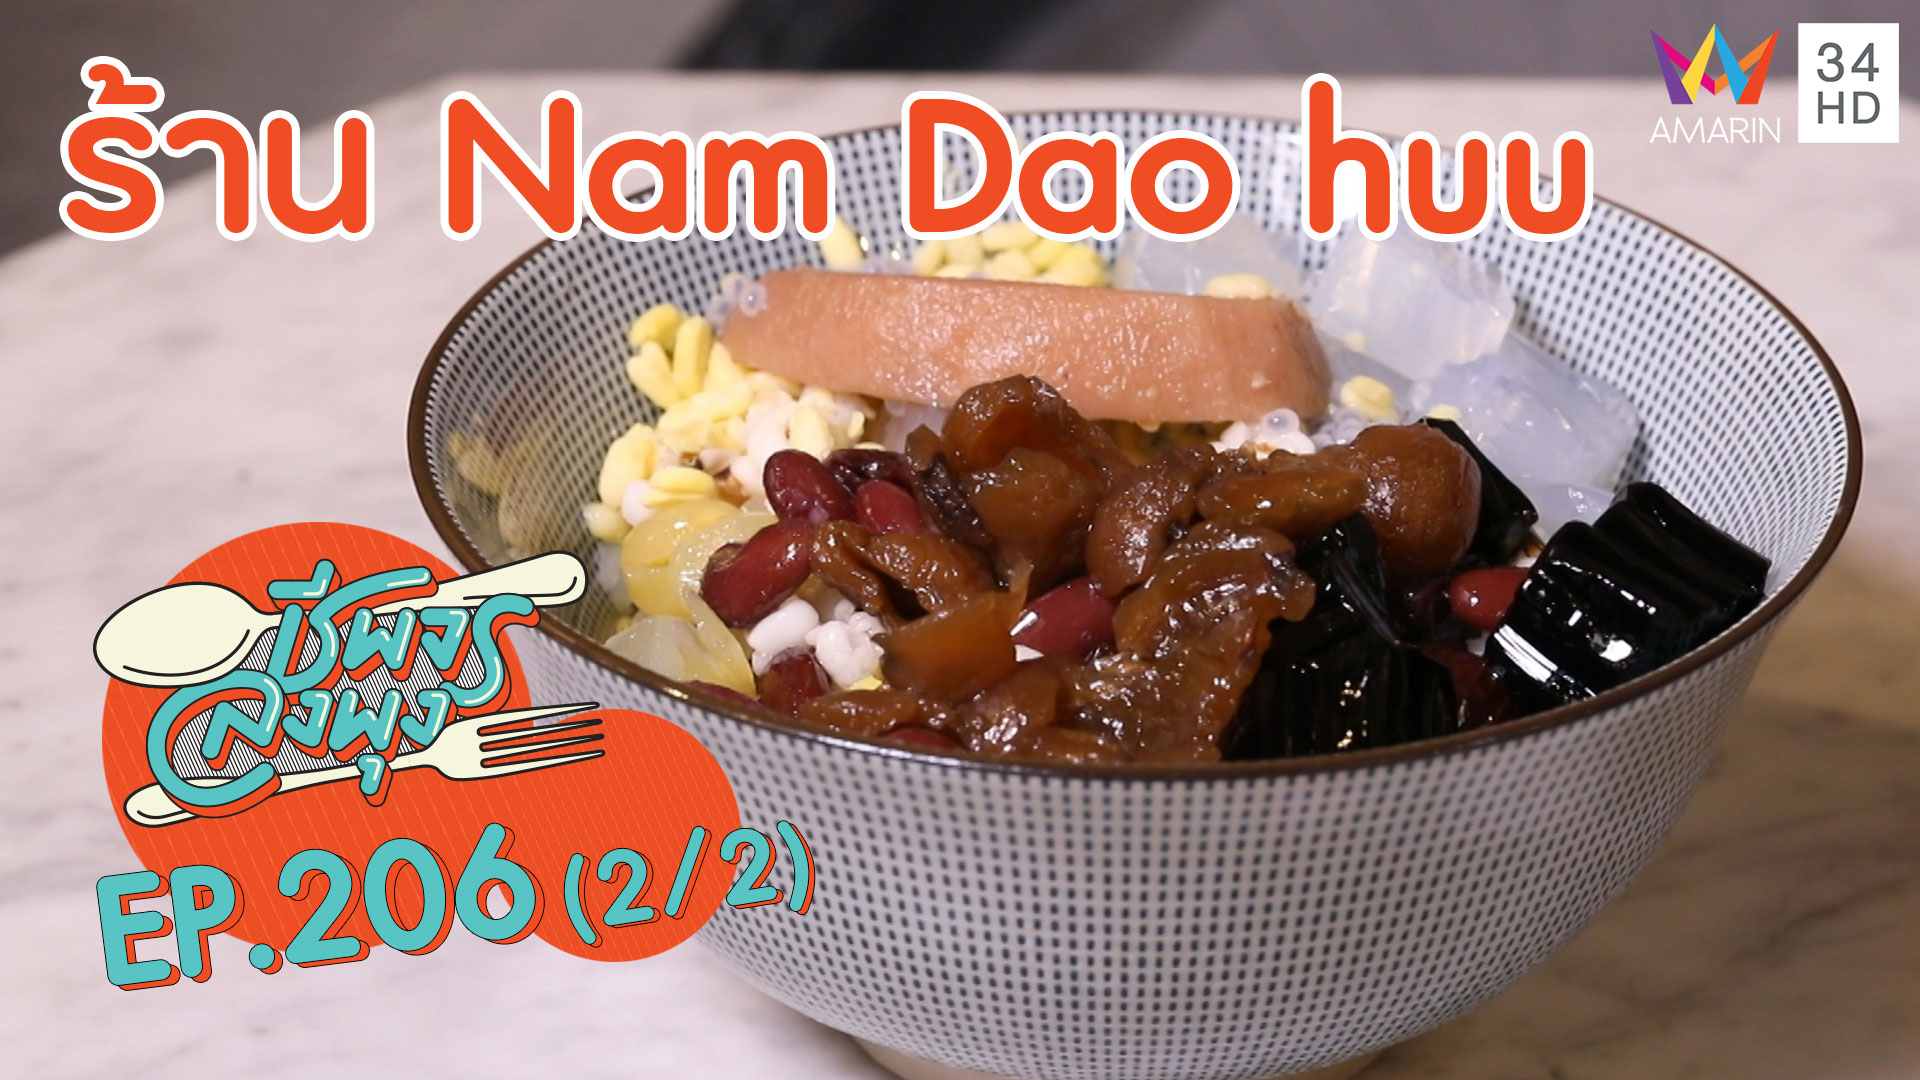 กินดีเพื่อสุขภาพ ร้าน Nam Dao huu | ชีพจรลงพุง | 15 มี.ค. 63 (2/2) | AMARIN TVHD34